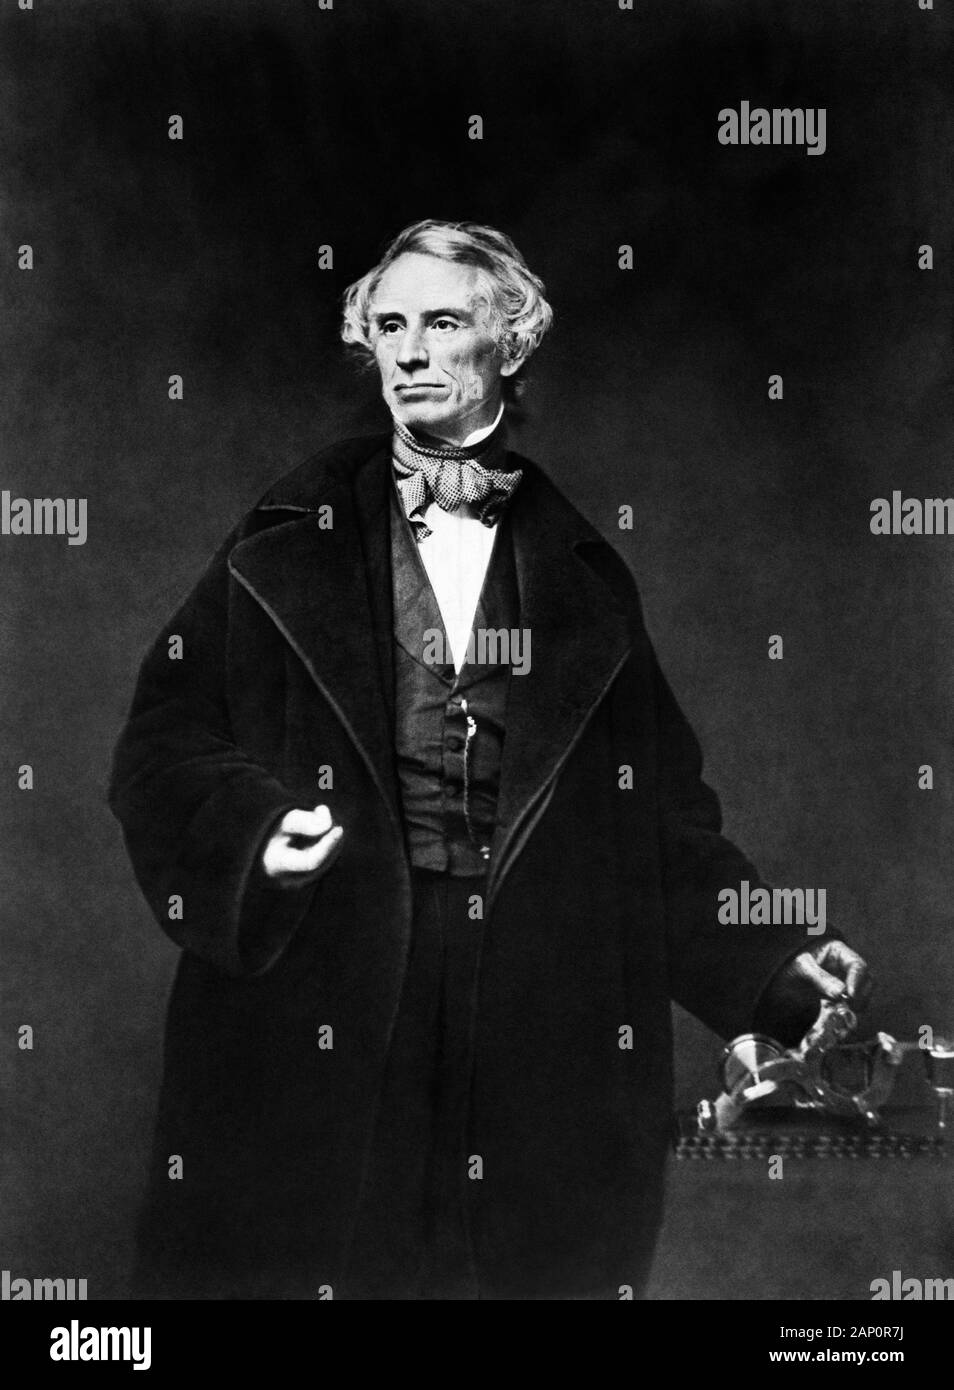 Vintage-Porträt des amerikanischen Malers und Erfinders Samuel F B Morse (170-1872) - ein Pionier in der Entwicklung des elektrischen Telegrafen und Mitschöpfers von Morse Code. Foto um das Jahr 1855 von Mathew B Brady, der Morse mit der Hand auf einem Telegraphenapparat zeigt. Stockfoto